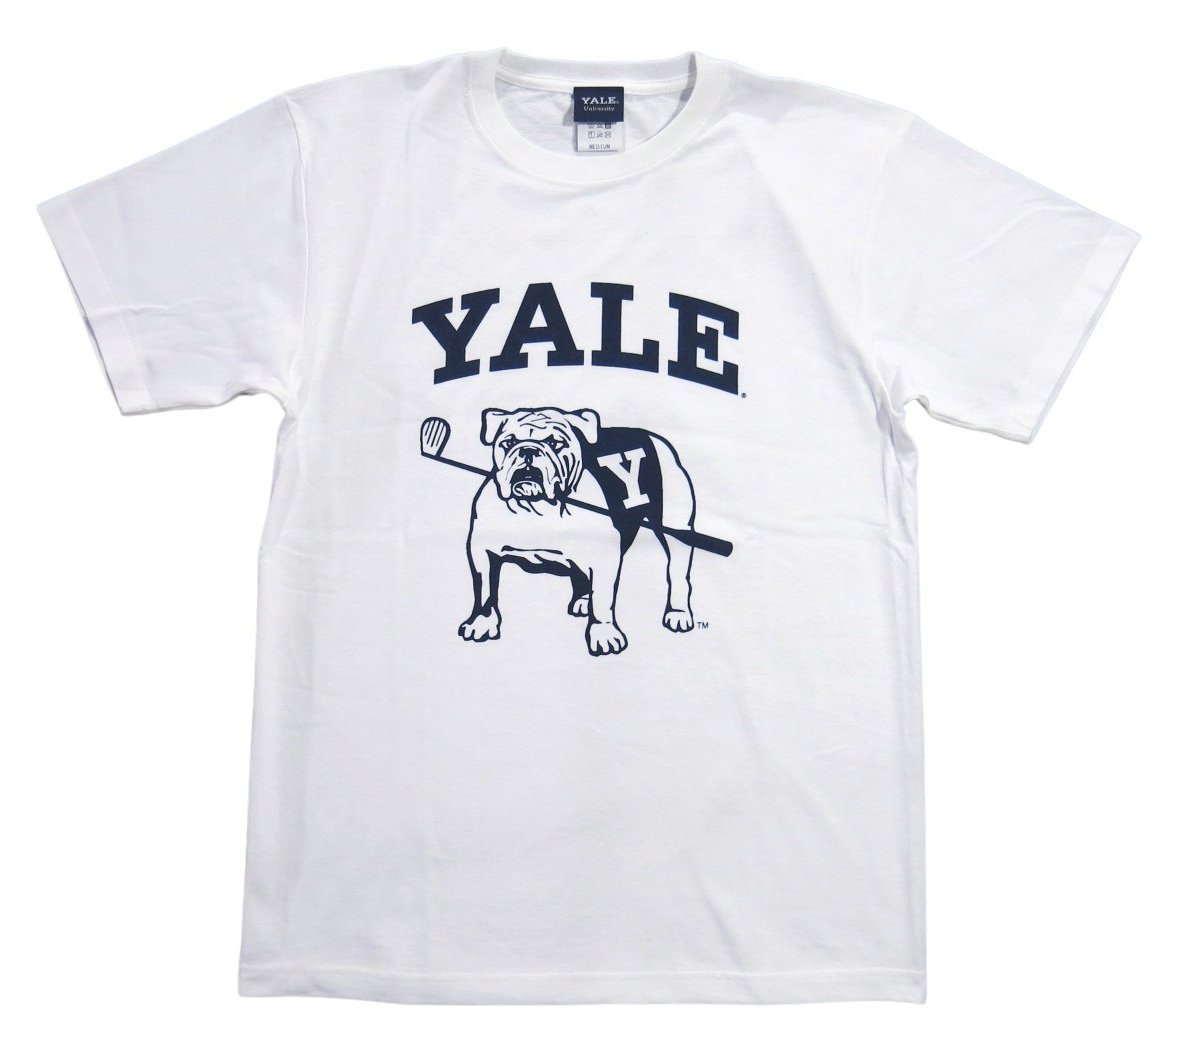 YALE イエール大学 カレッジプリント 半袖 Tシャツ YALE-086